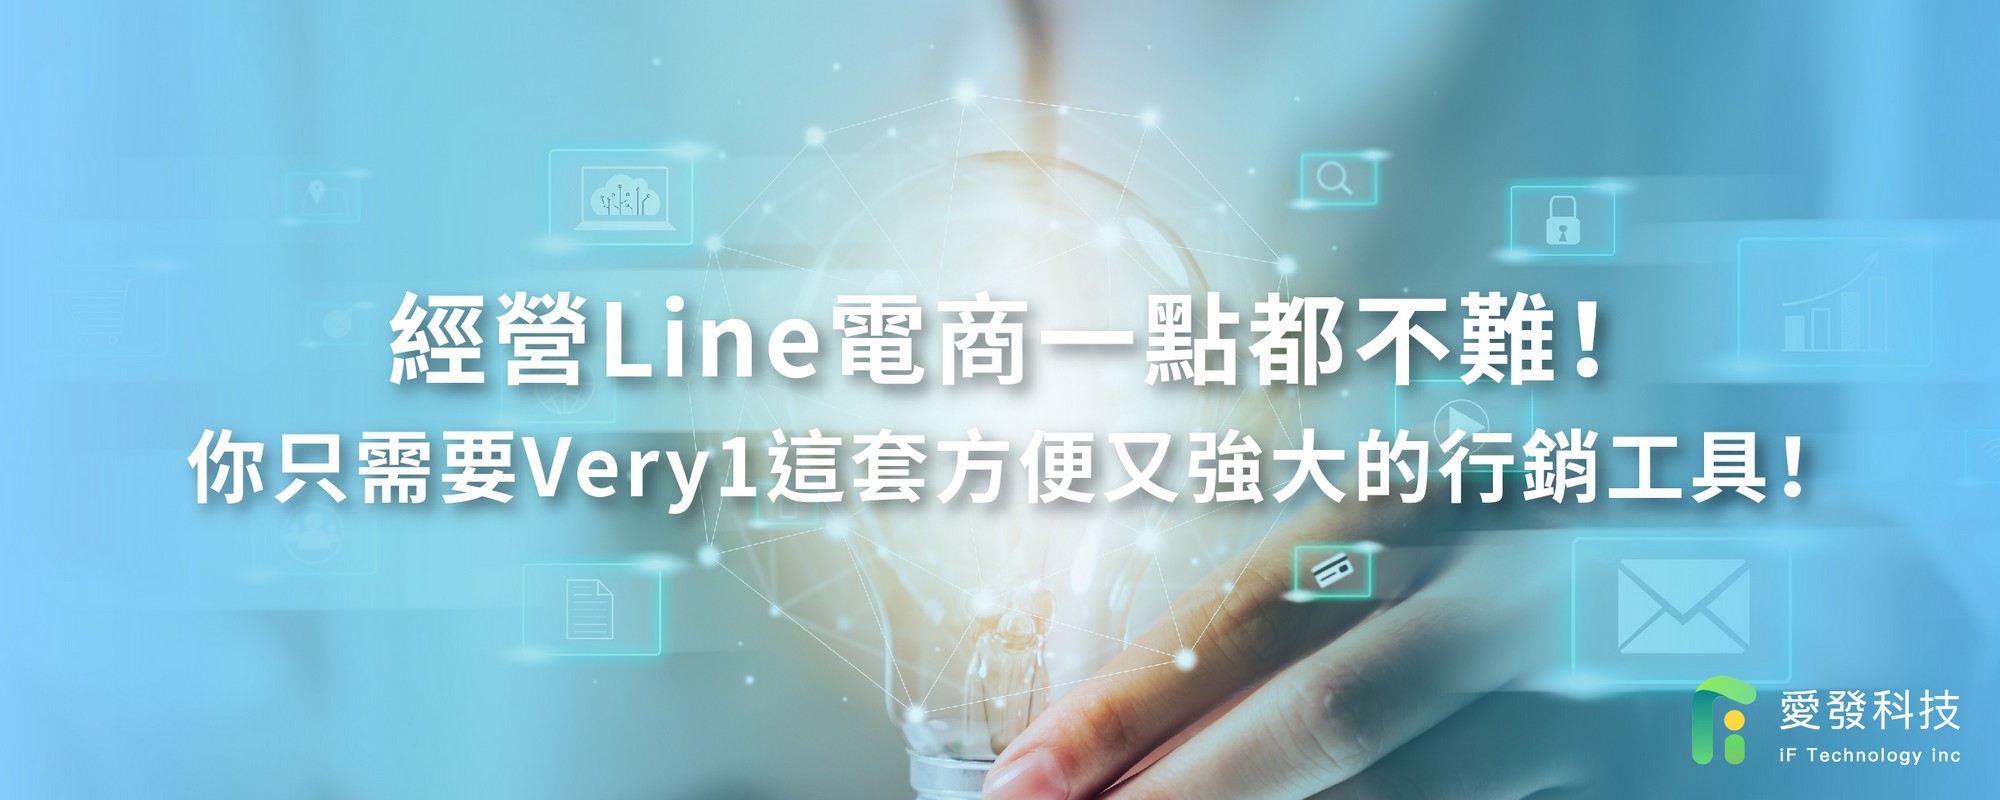 網路商店,電商經營,電商管理,Line行銷,Line電商,Line行銷策略與經營技巧,Line創意行銷,Line行銷案例,Line行銷教學,Line行銷公司,Line廣告行銷,Line行銷工具,Line行銷企劃